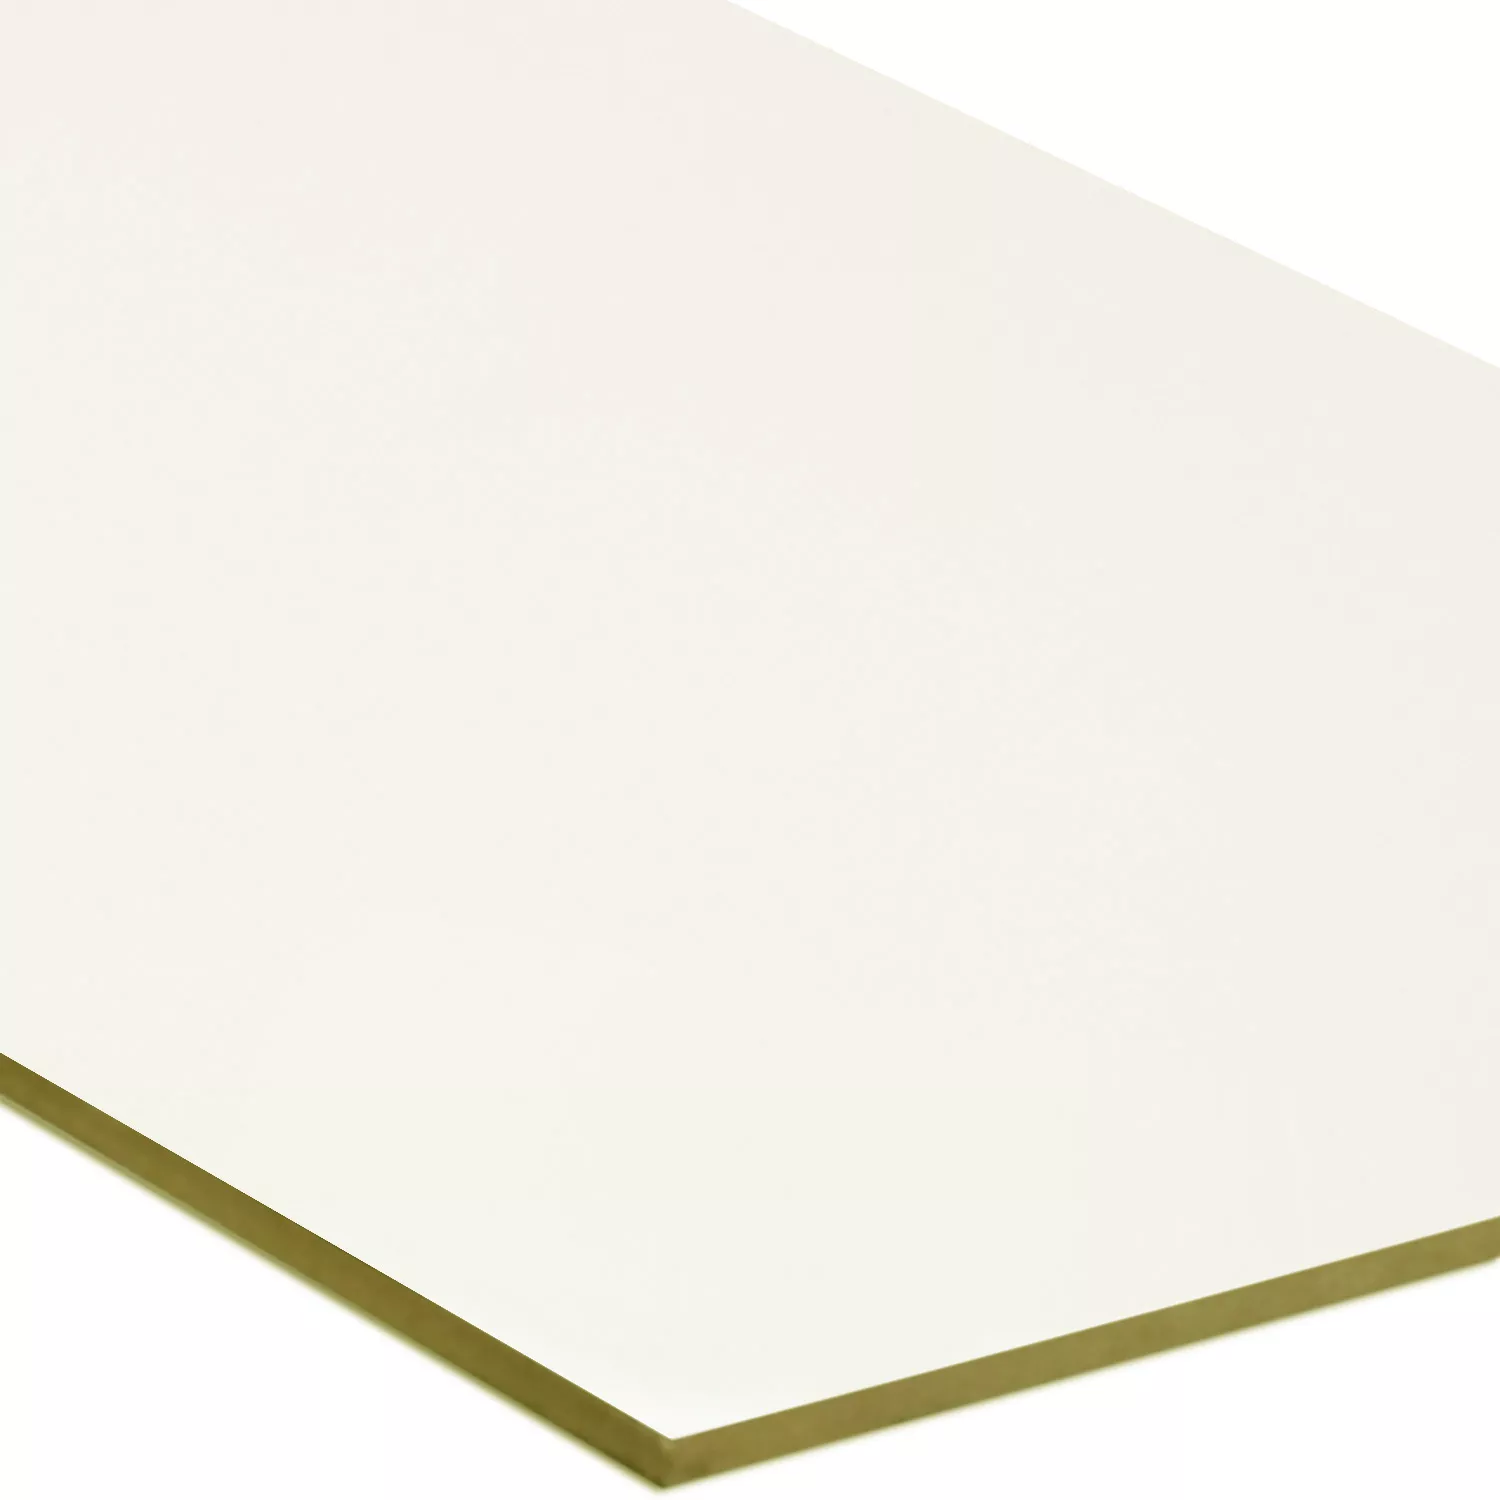 Πρότυπο Πλακάκια Tοίχου Anabell Ανάλαφρη Kρέμα Παγωμένος 30x60cm